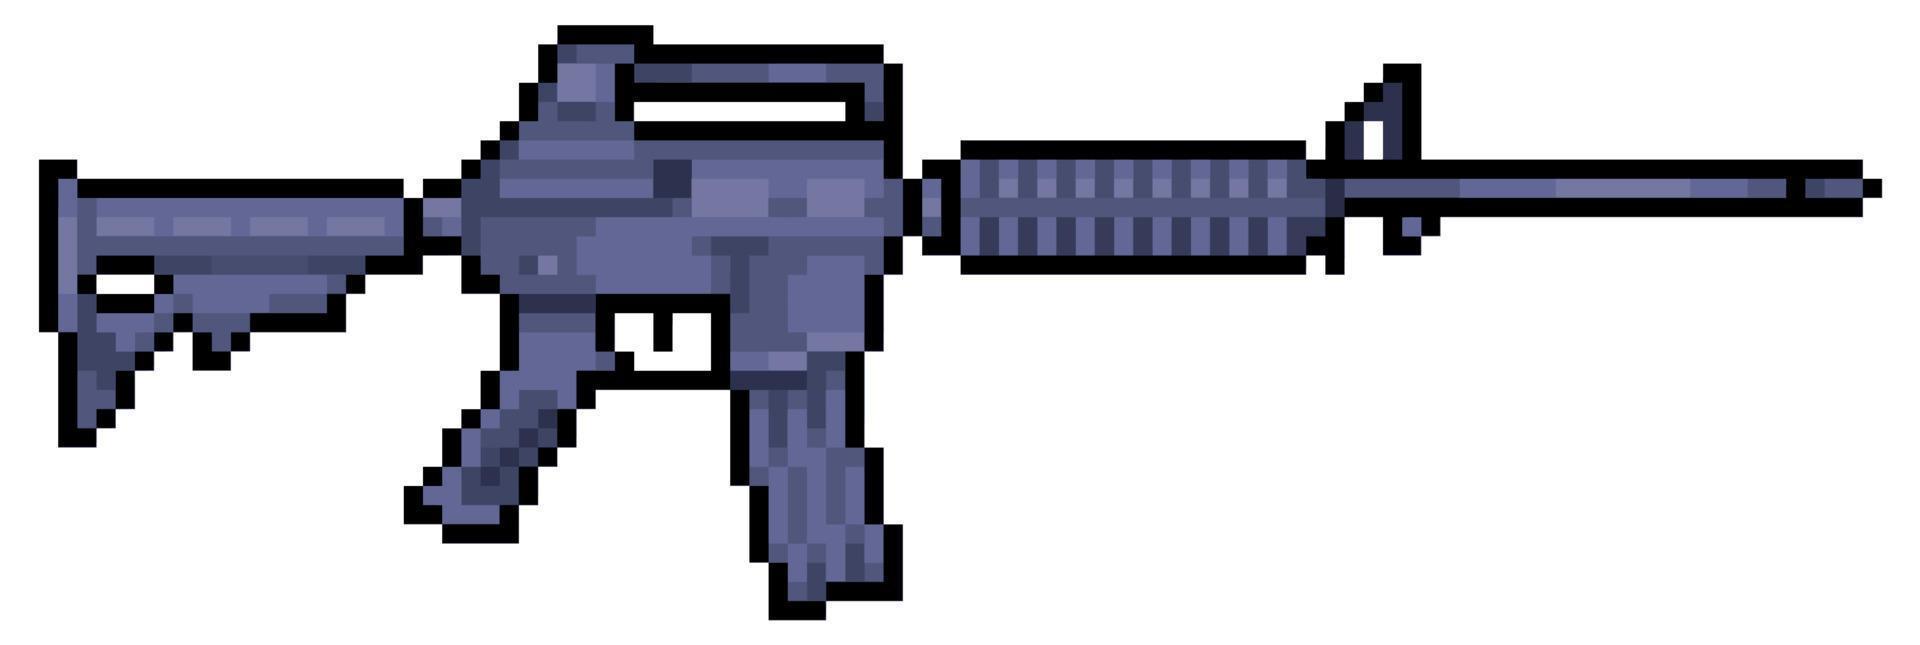 carabine pixel art m4. icône de vecteur d'arme à feu m16 pour jeu 8 bits sur fond blanc